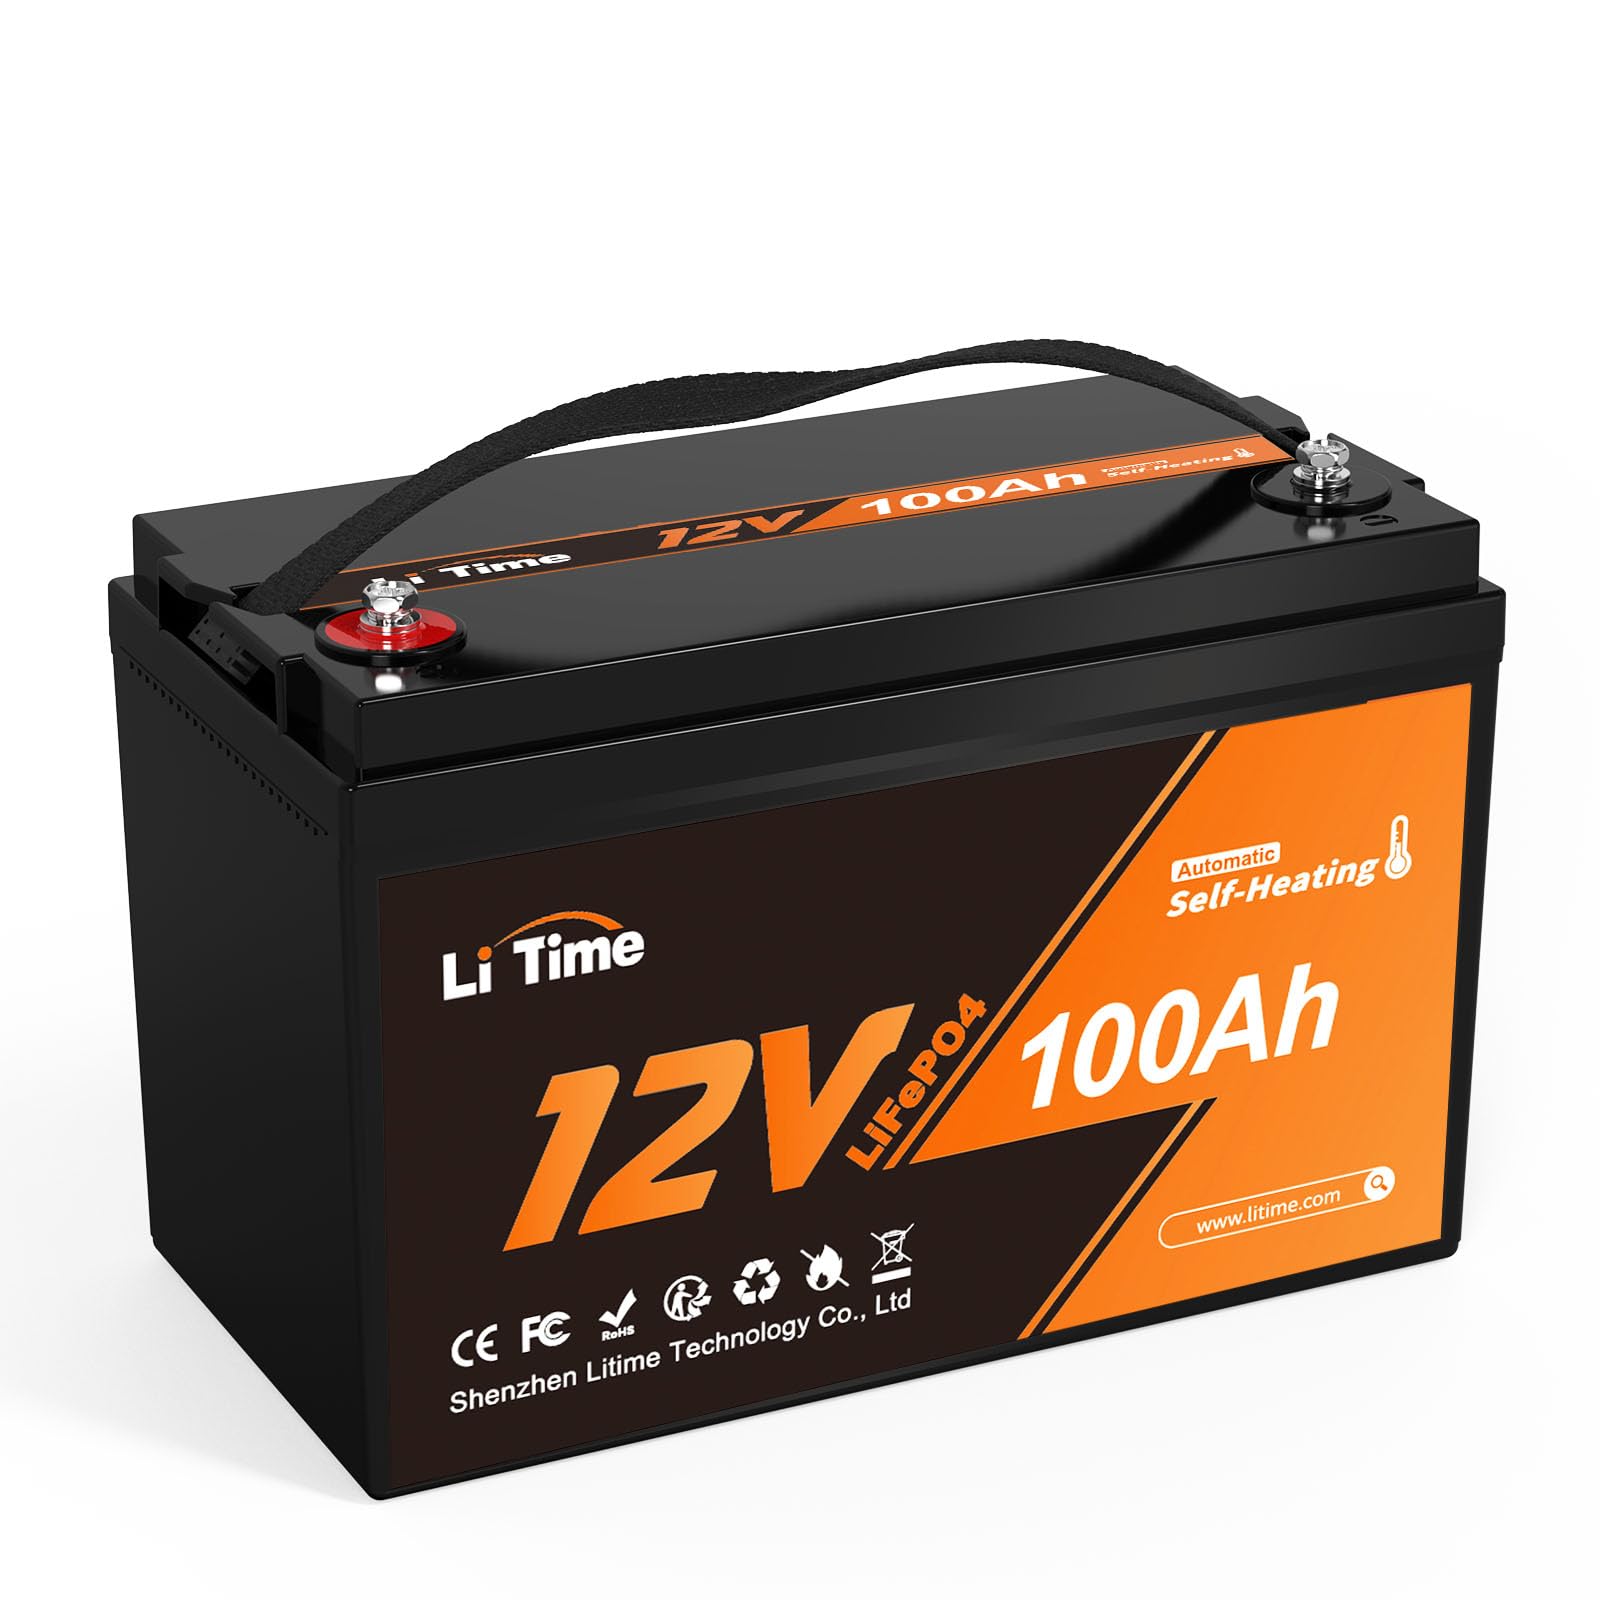 LiTime 12V 100Ah LiFePO4 Batterie mit selbstwärmende, -20℃ bis 50°C Tieftemperatur-Ladung, 100A BMS, 4000-15000 Zyklen, 10 Jahre Lebensdauer, Perfekter für Wohnmobil, Solar, Camping, Off-Grid, Marine von Litime